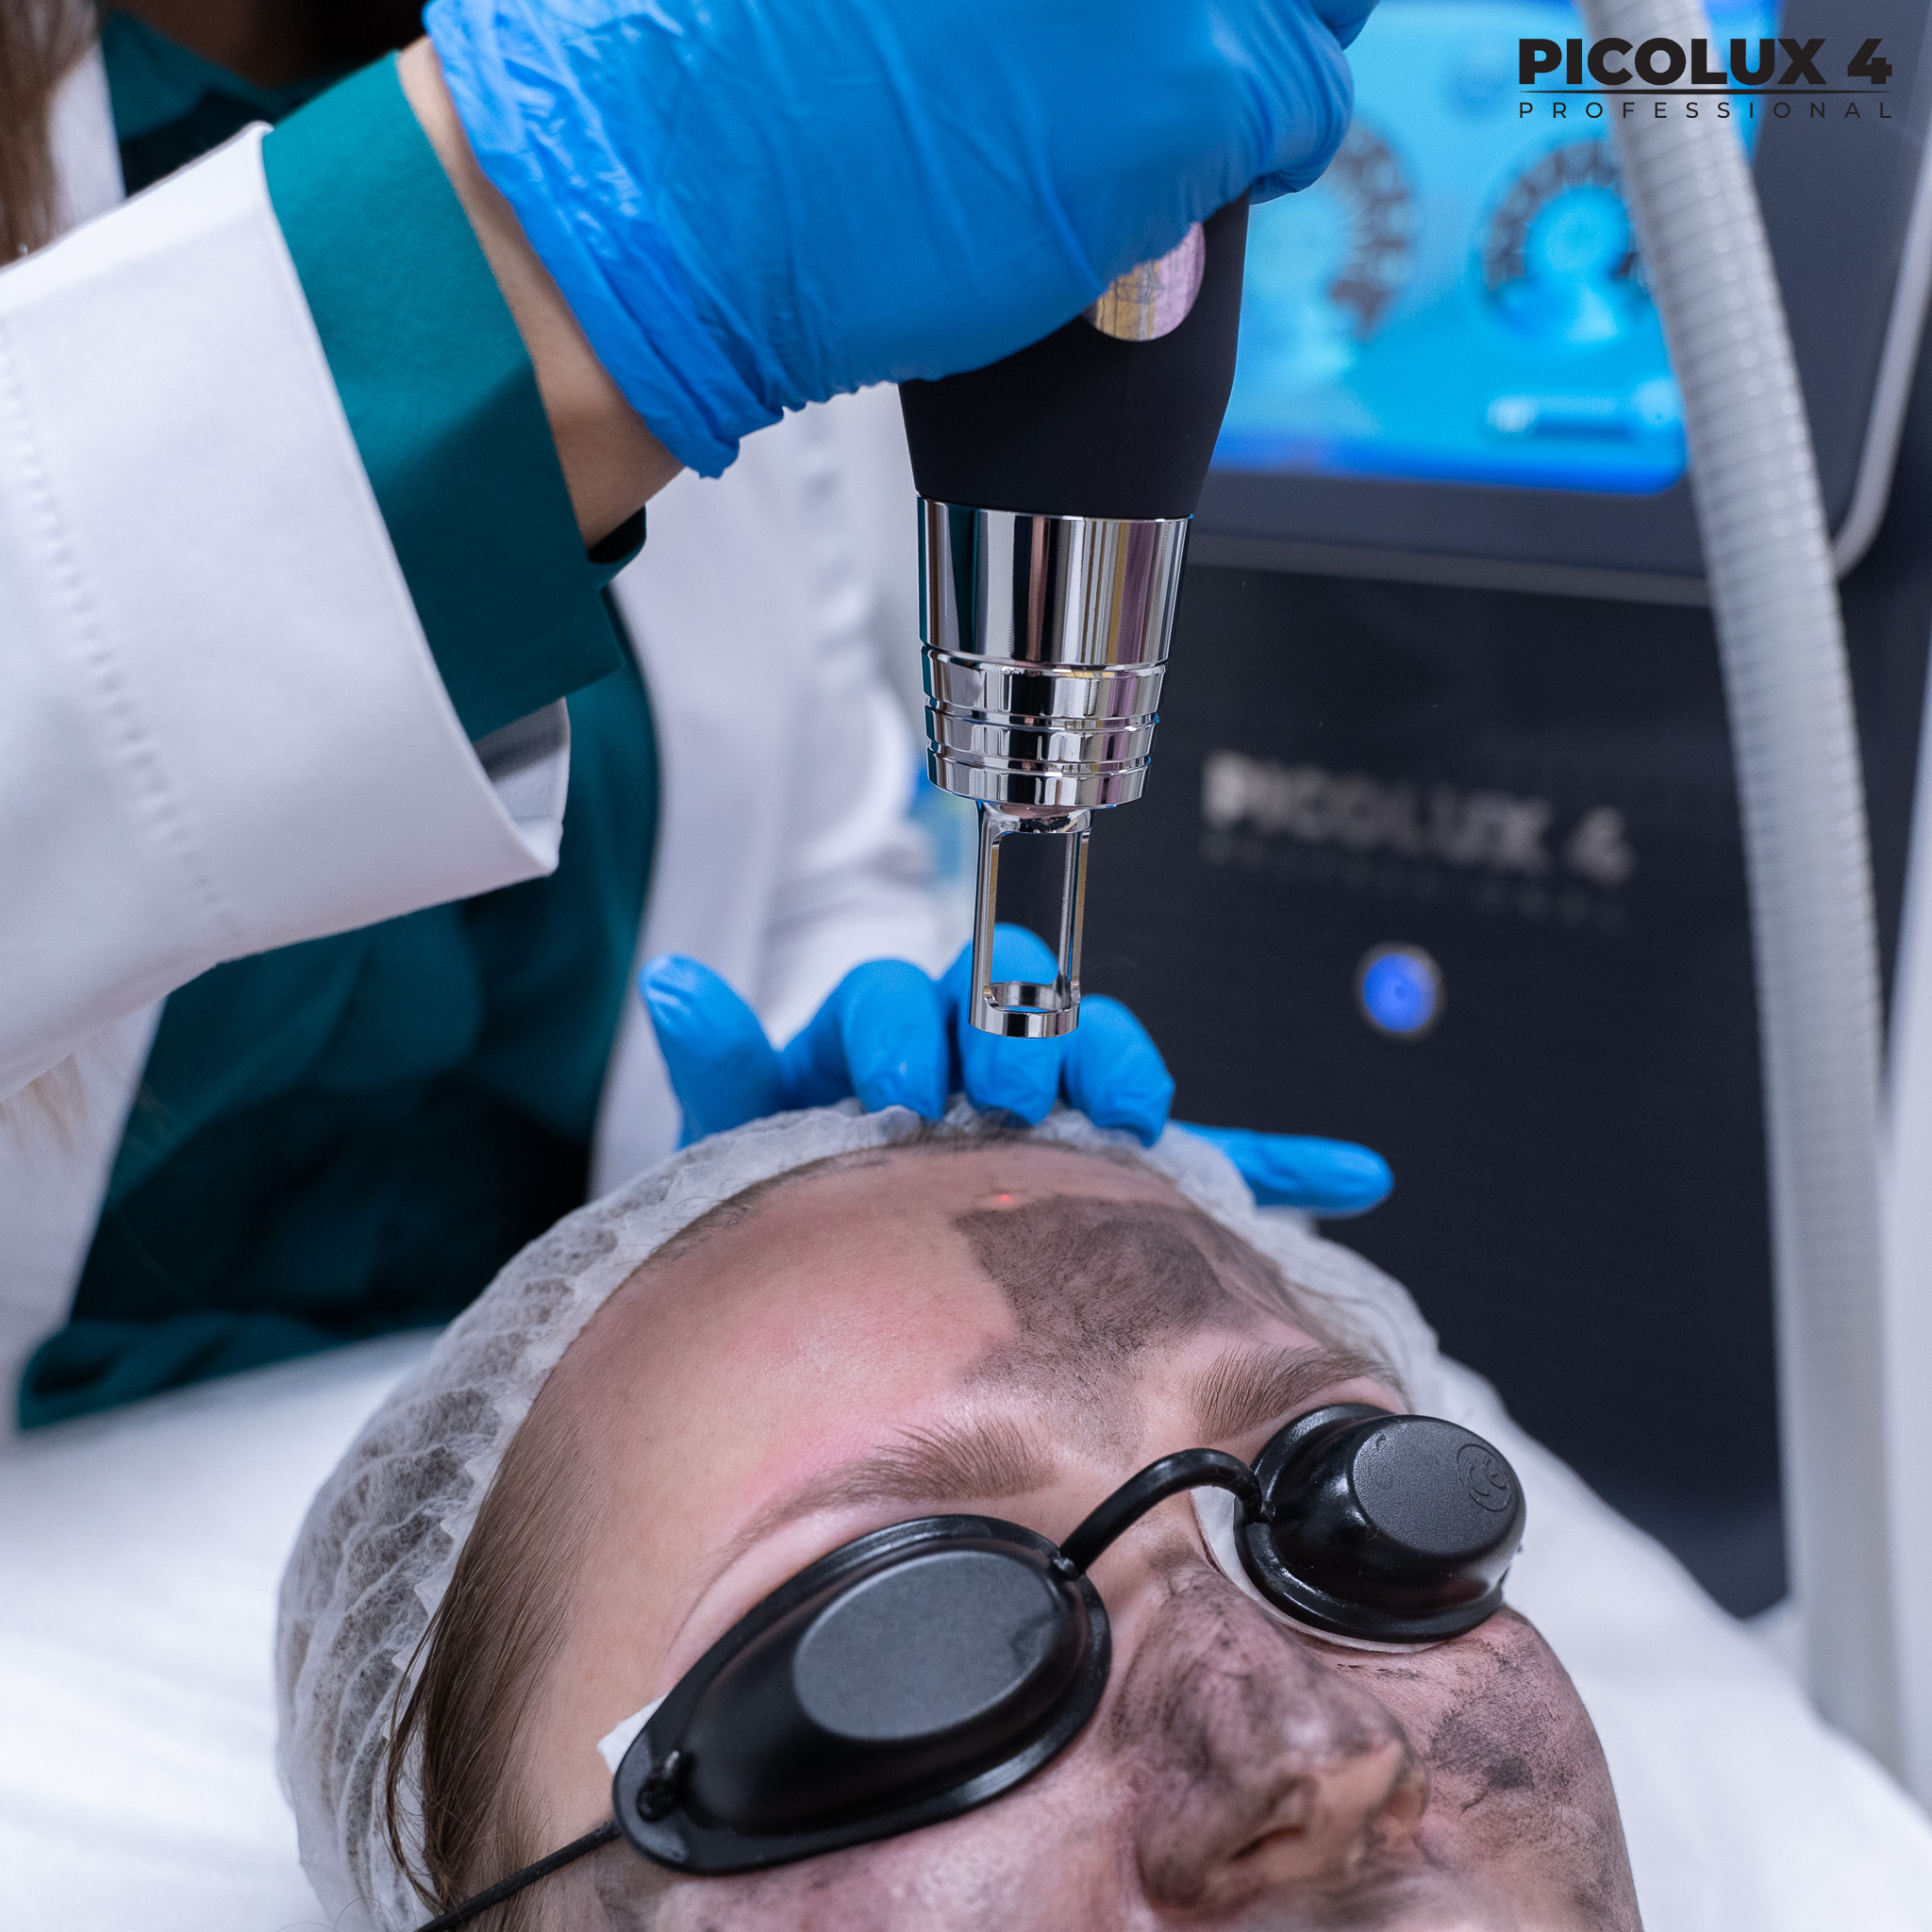 Zabiegi laserowego peelingu węglowego mogą być wykonywane na całym ciele.